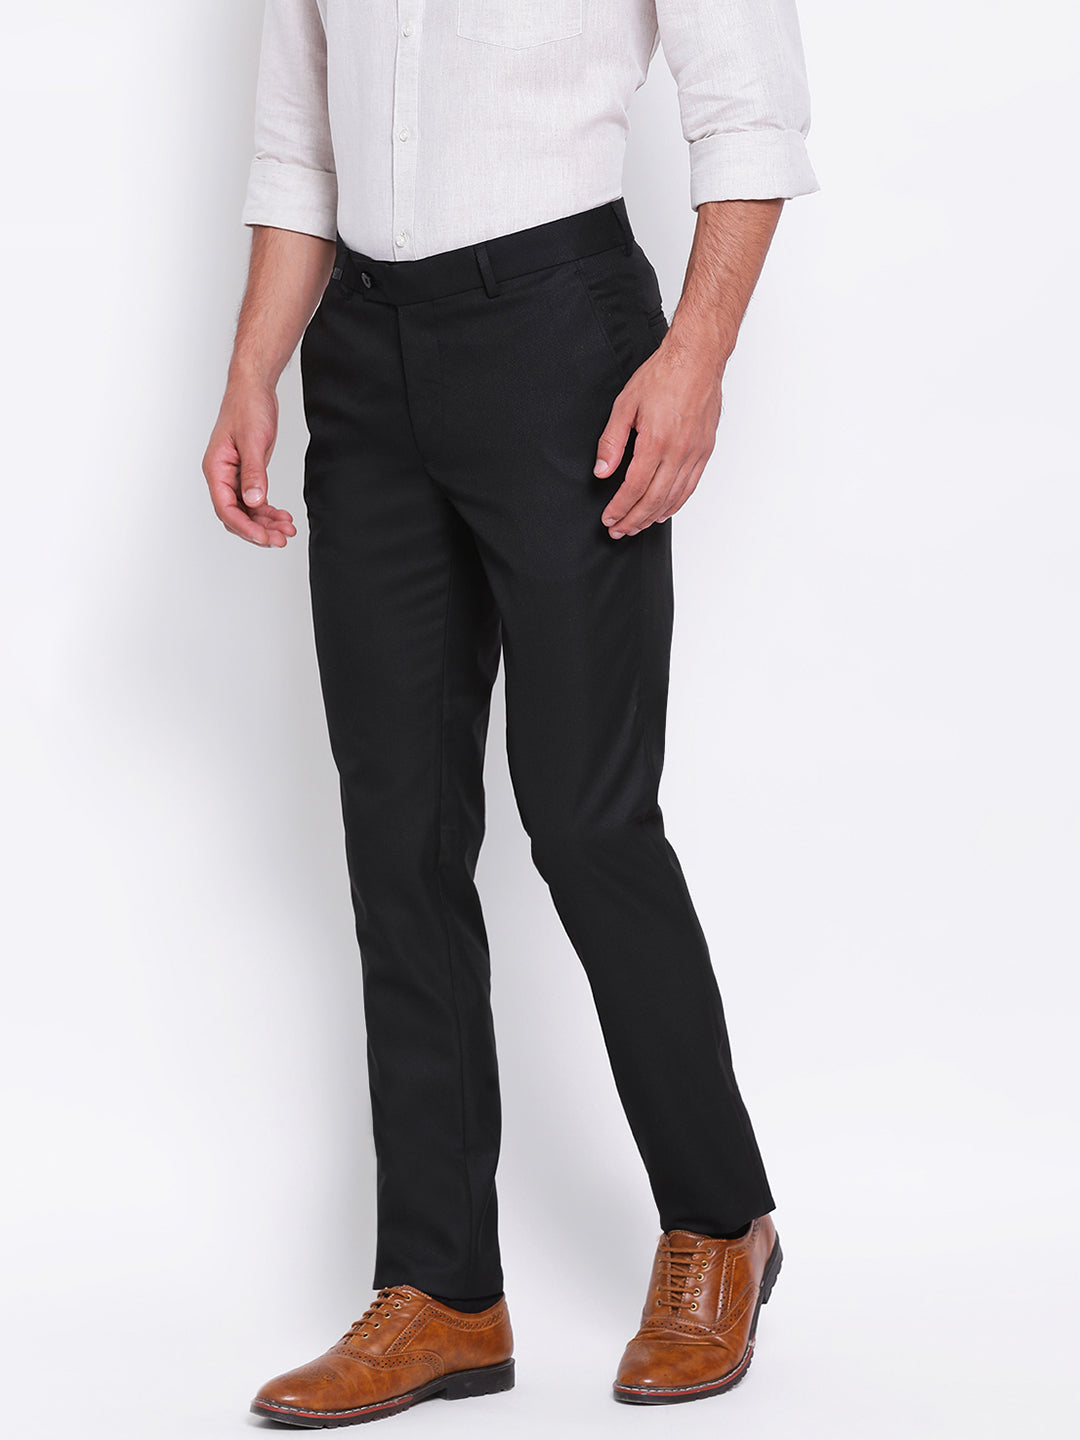 Men's Designer Cotton Fashions Stripe Formal Wedding Dress Suit Pants Man  Stripe Business Casual Pants Trousers